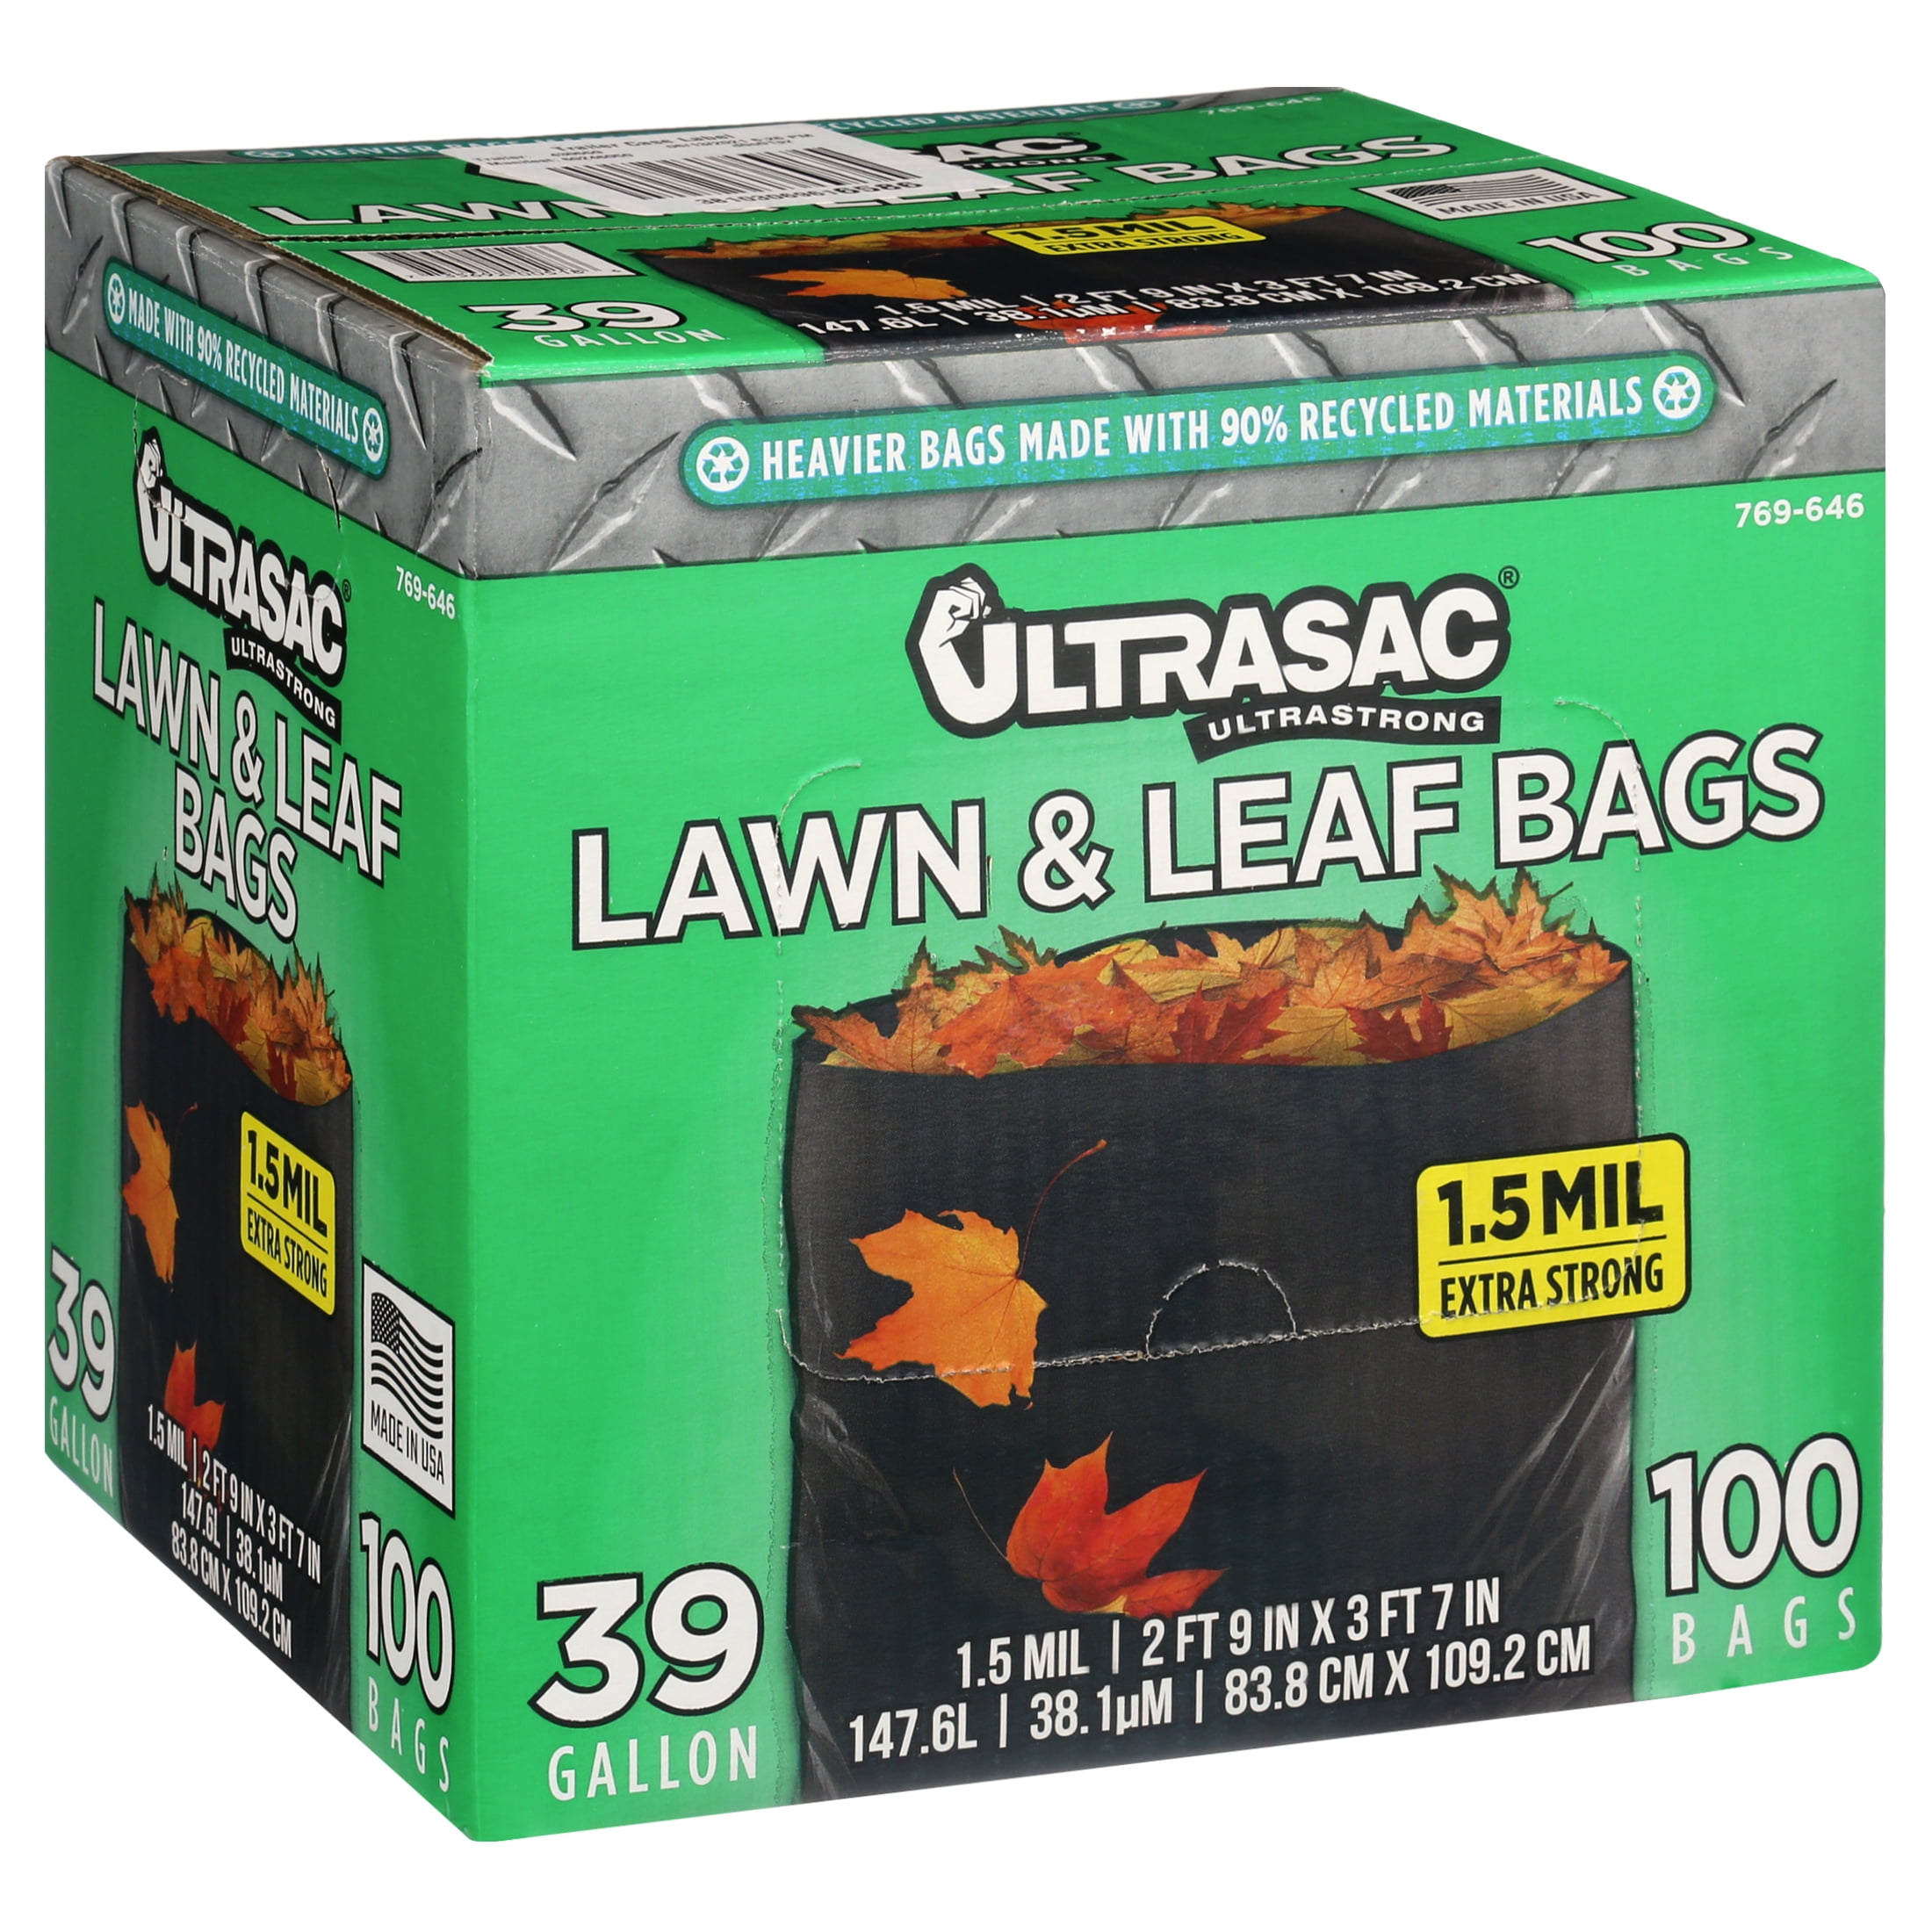 39 Gallon Garbage Bags Lawn and Leaf Bags by Ultrasac Huge 100 Pack/w Ties 